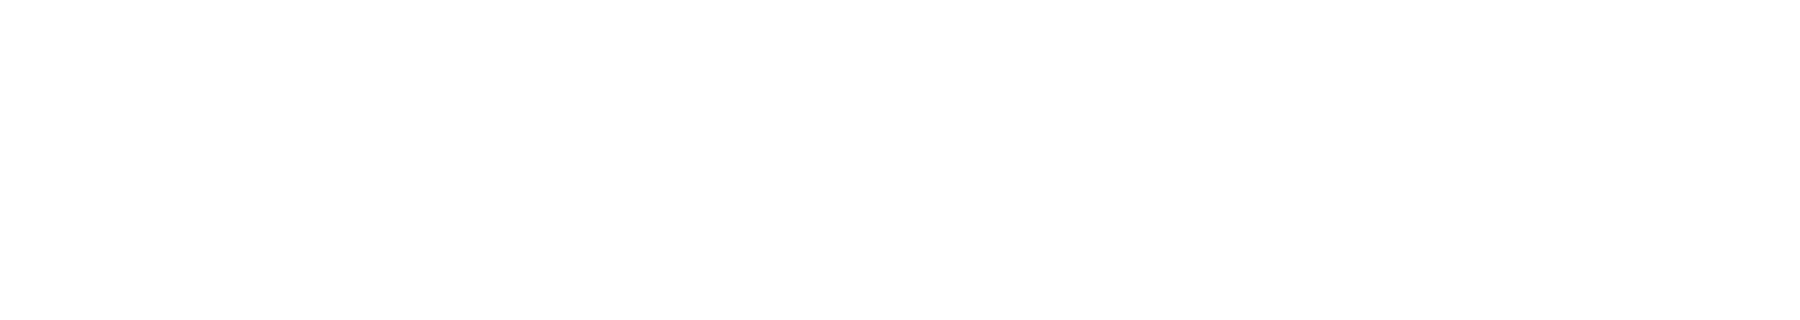 Federal Gear